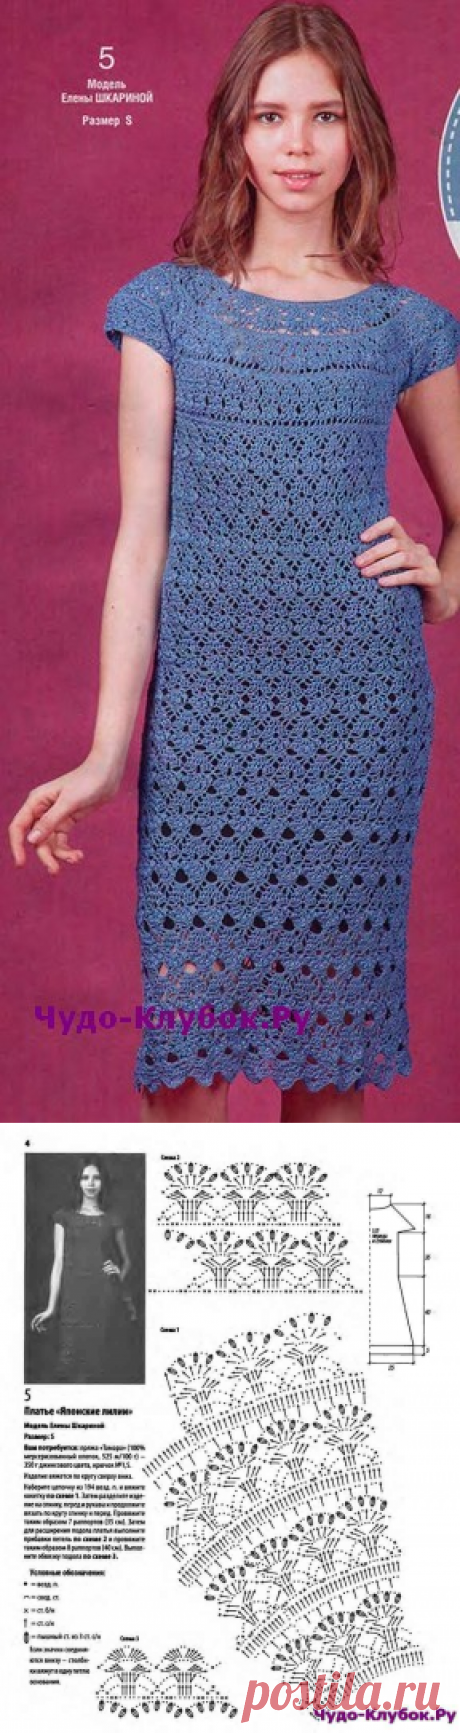 Платье с круглой кокеткой вязаное крючком 865 |❤️️ ЧУДО-КЛУБОК.рУ ➲ официальный сайт вязания ✶